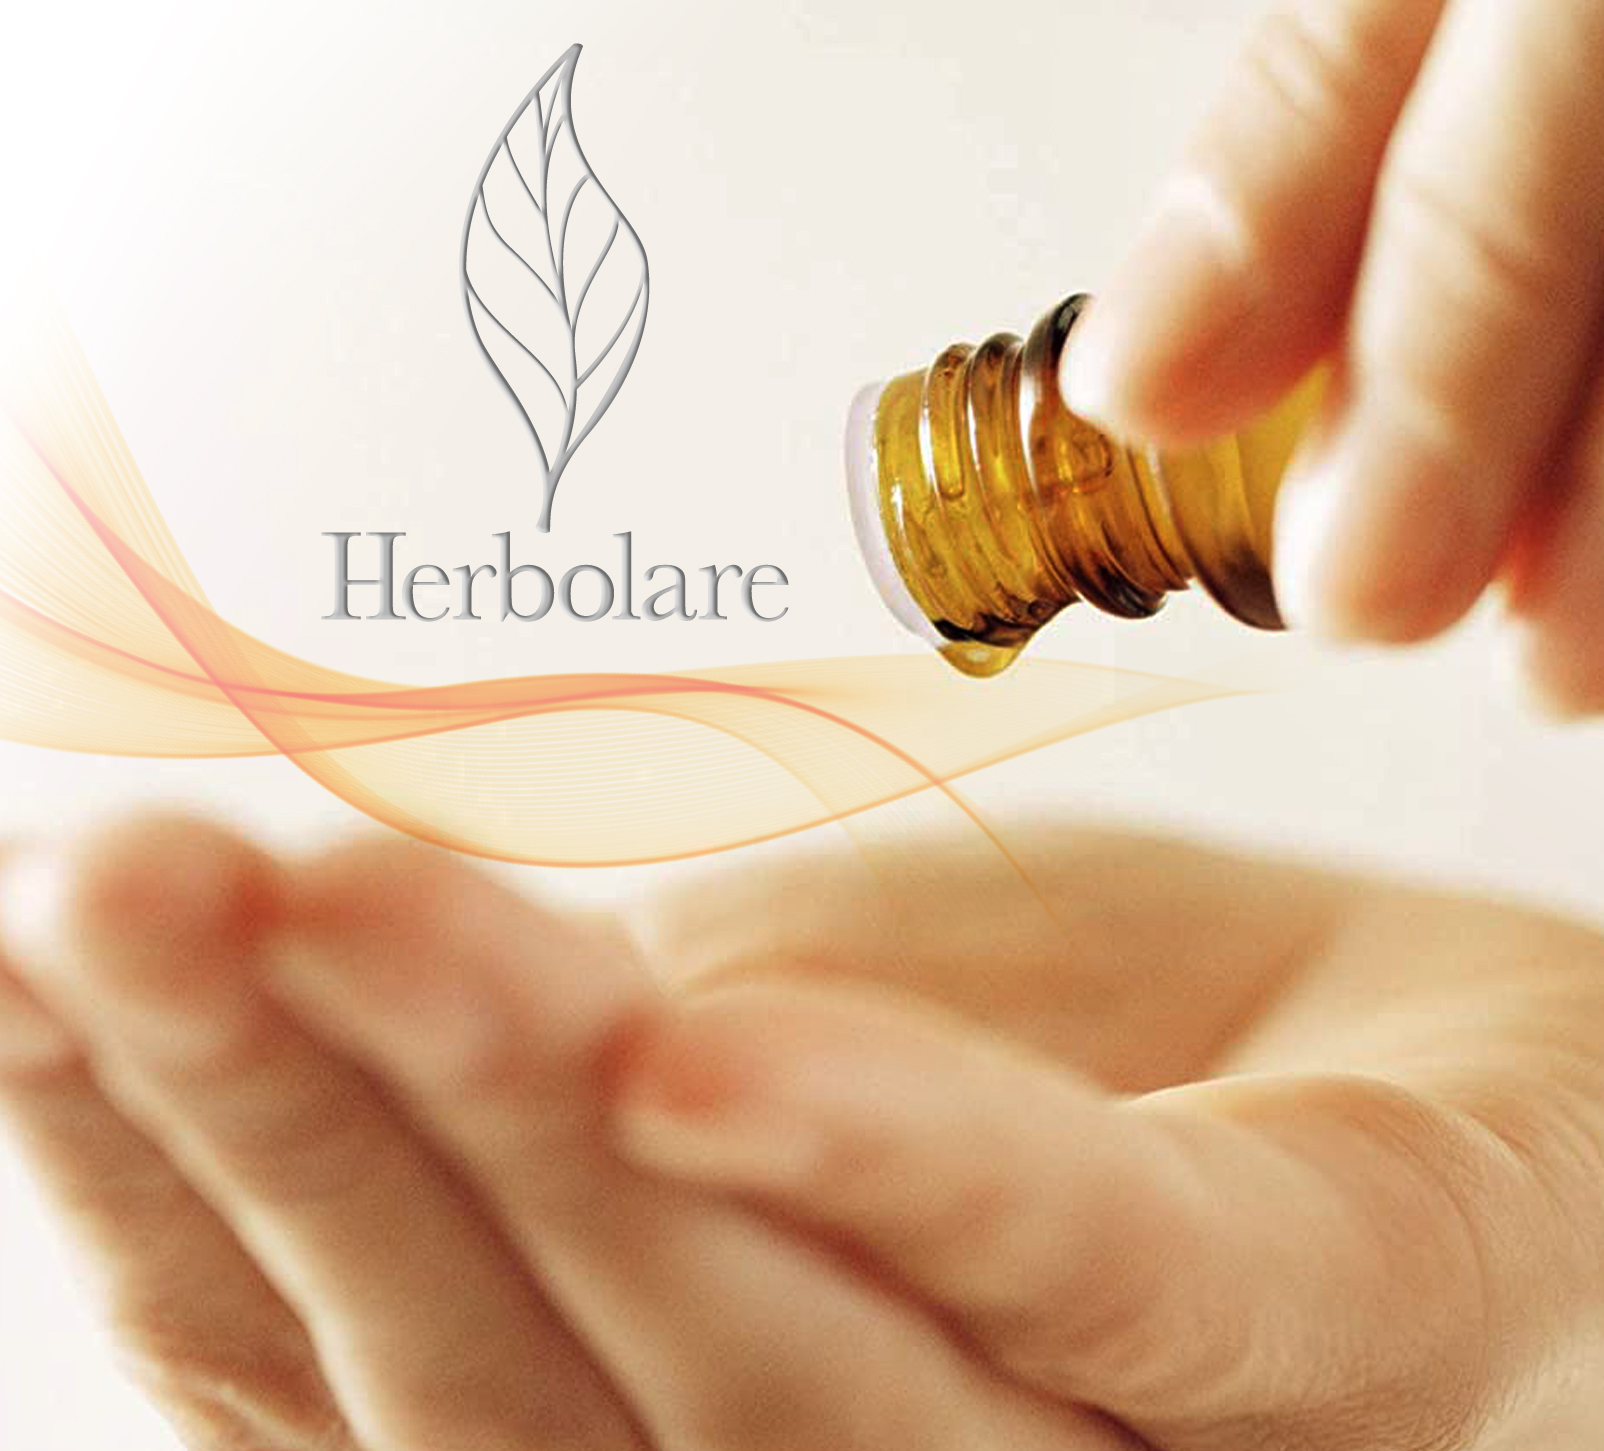 Aceite esencial Herbolare Citrus 15 ml. Mezcla de aceites esenciales sinérgicamente combinada para brindar una sensación única de bienestar.